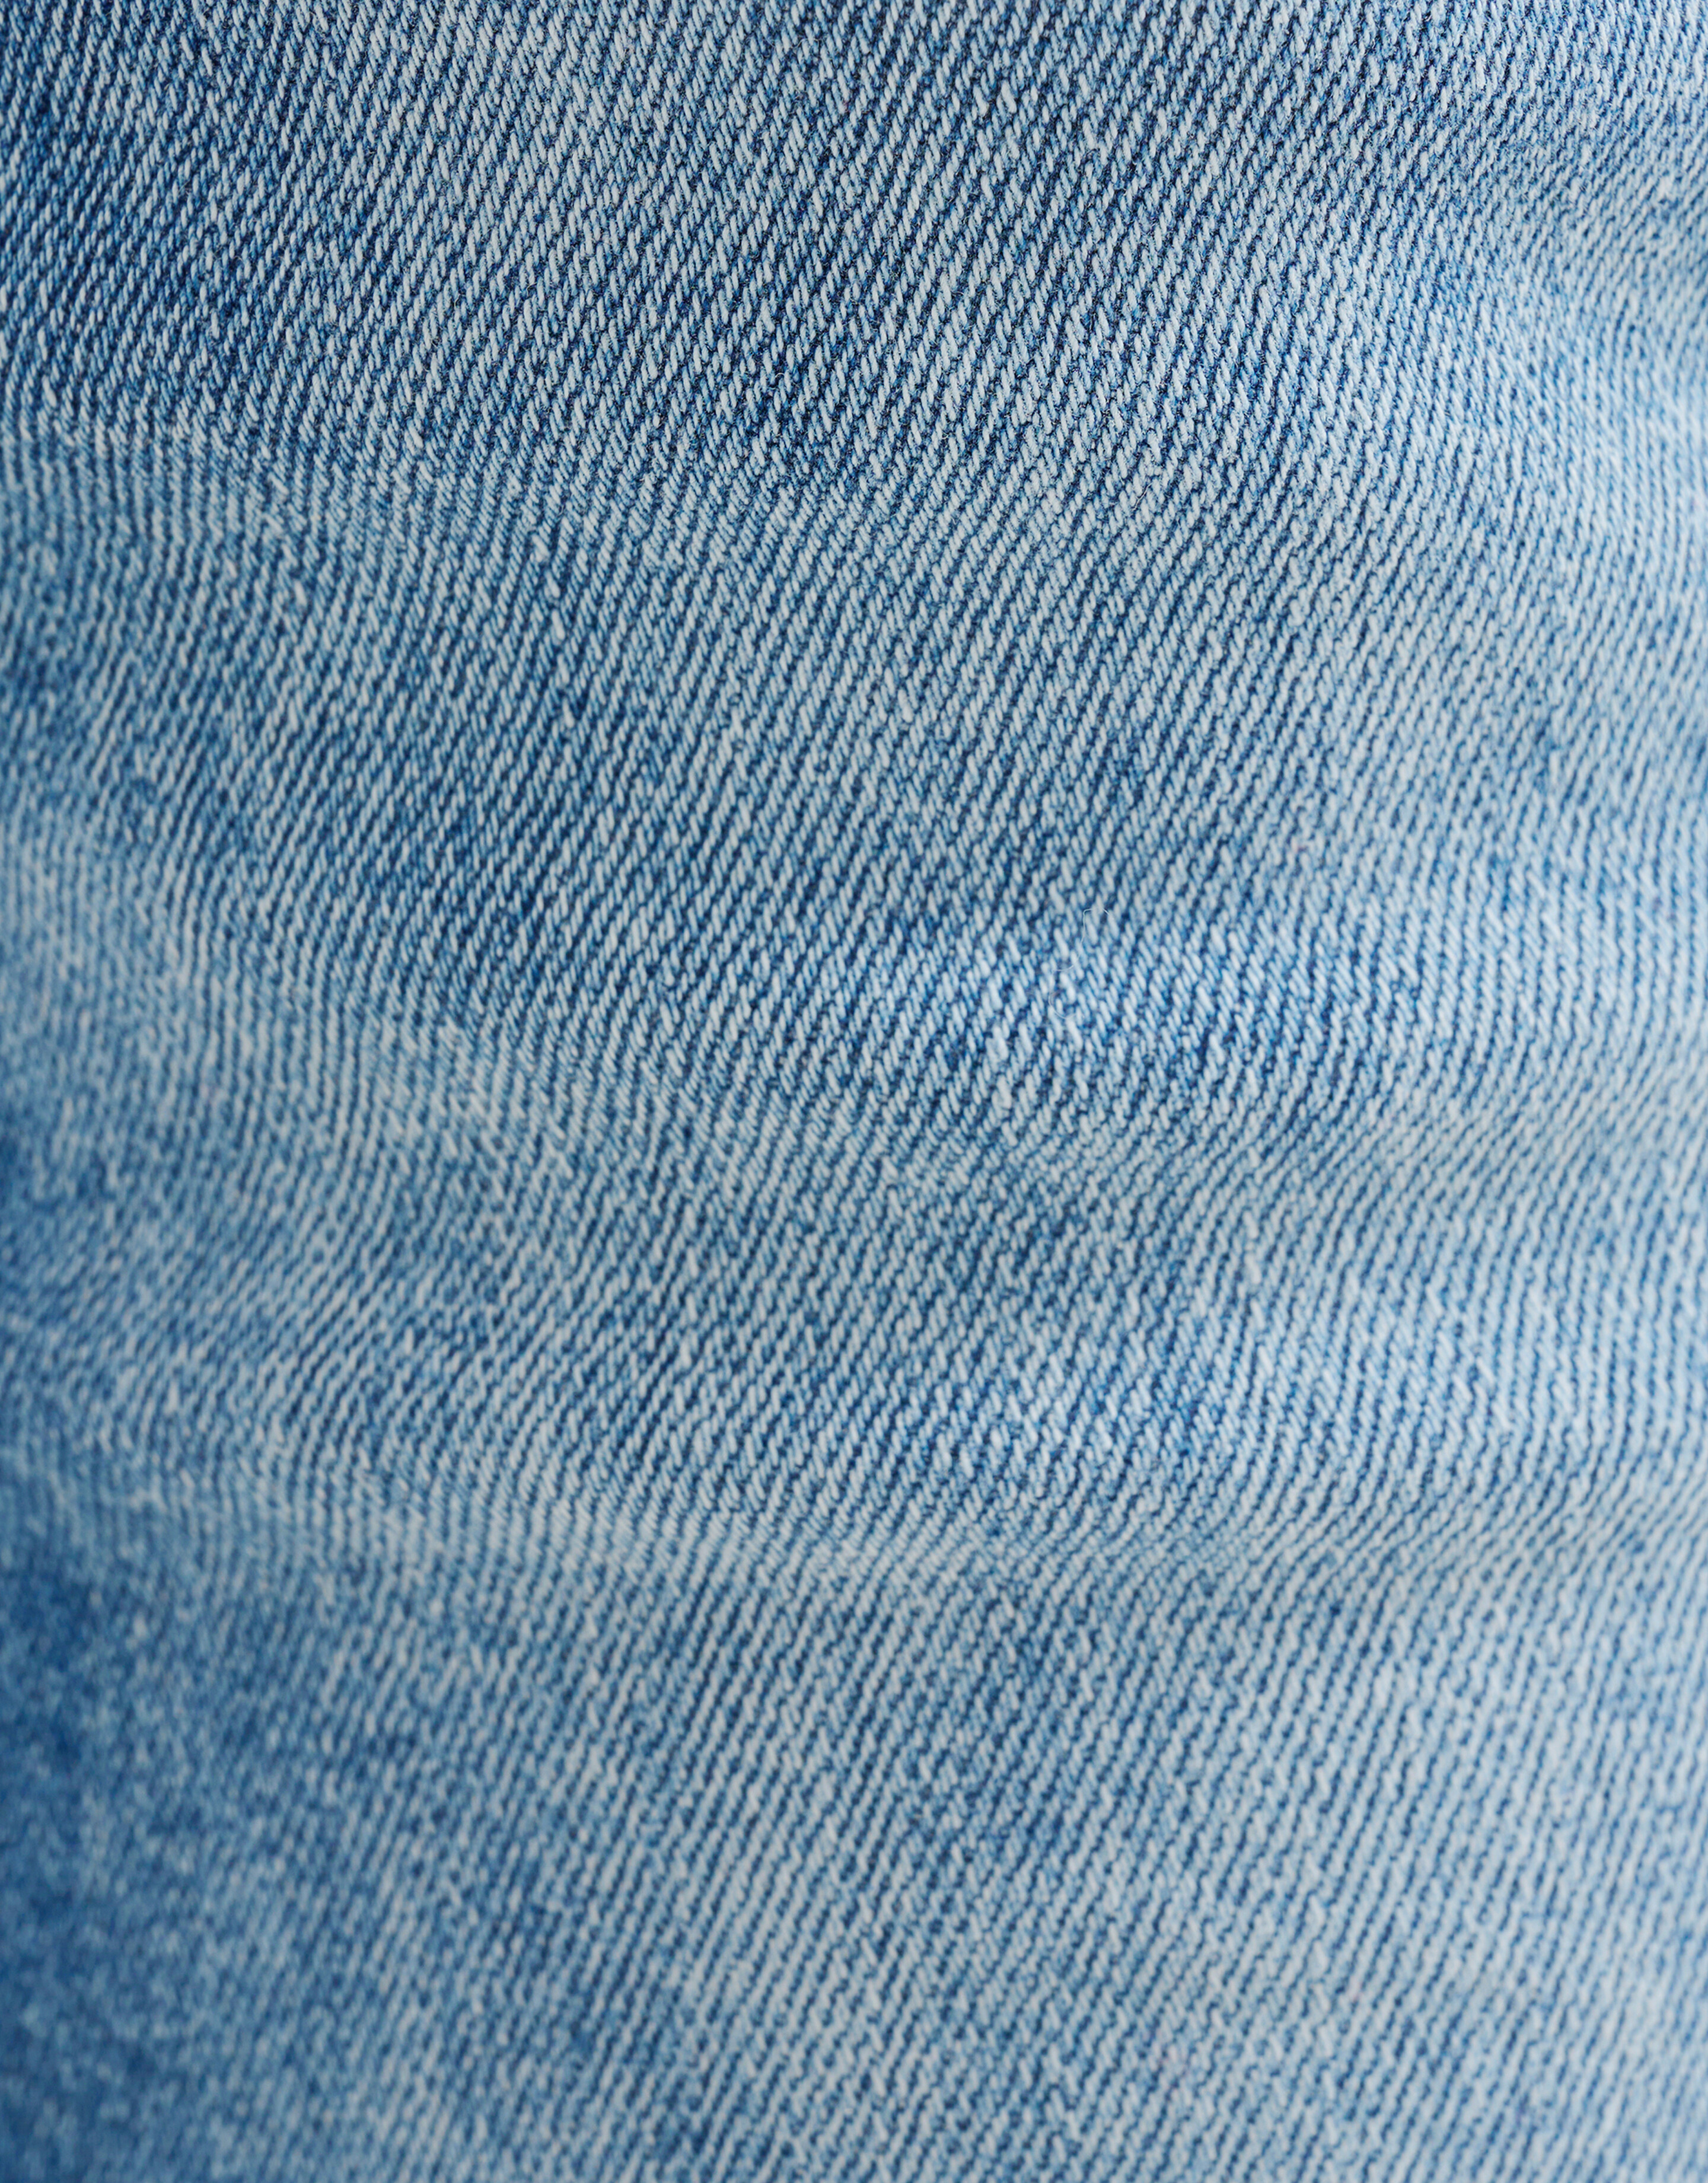 Skinny Jeans Mediumstone L32 Refill